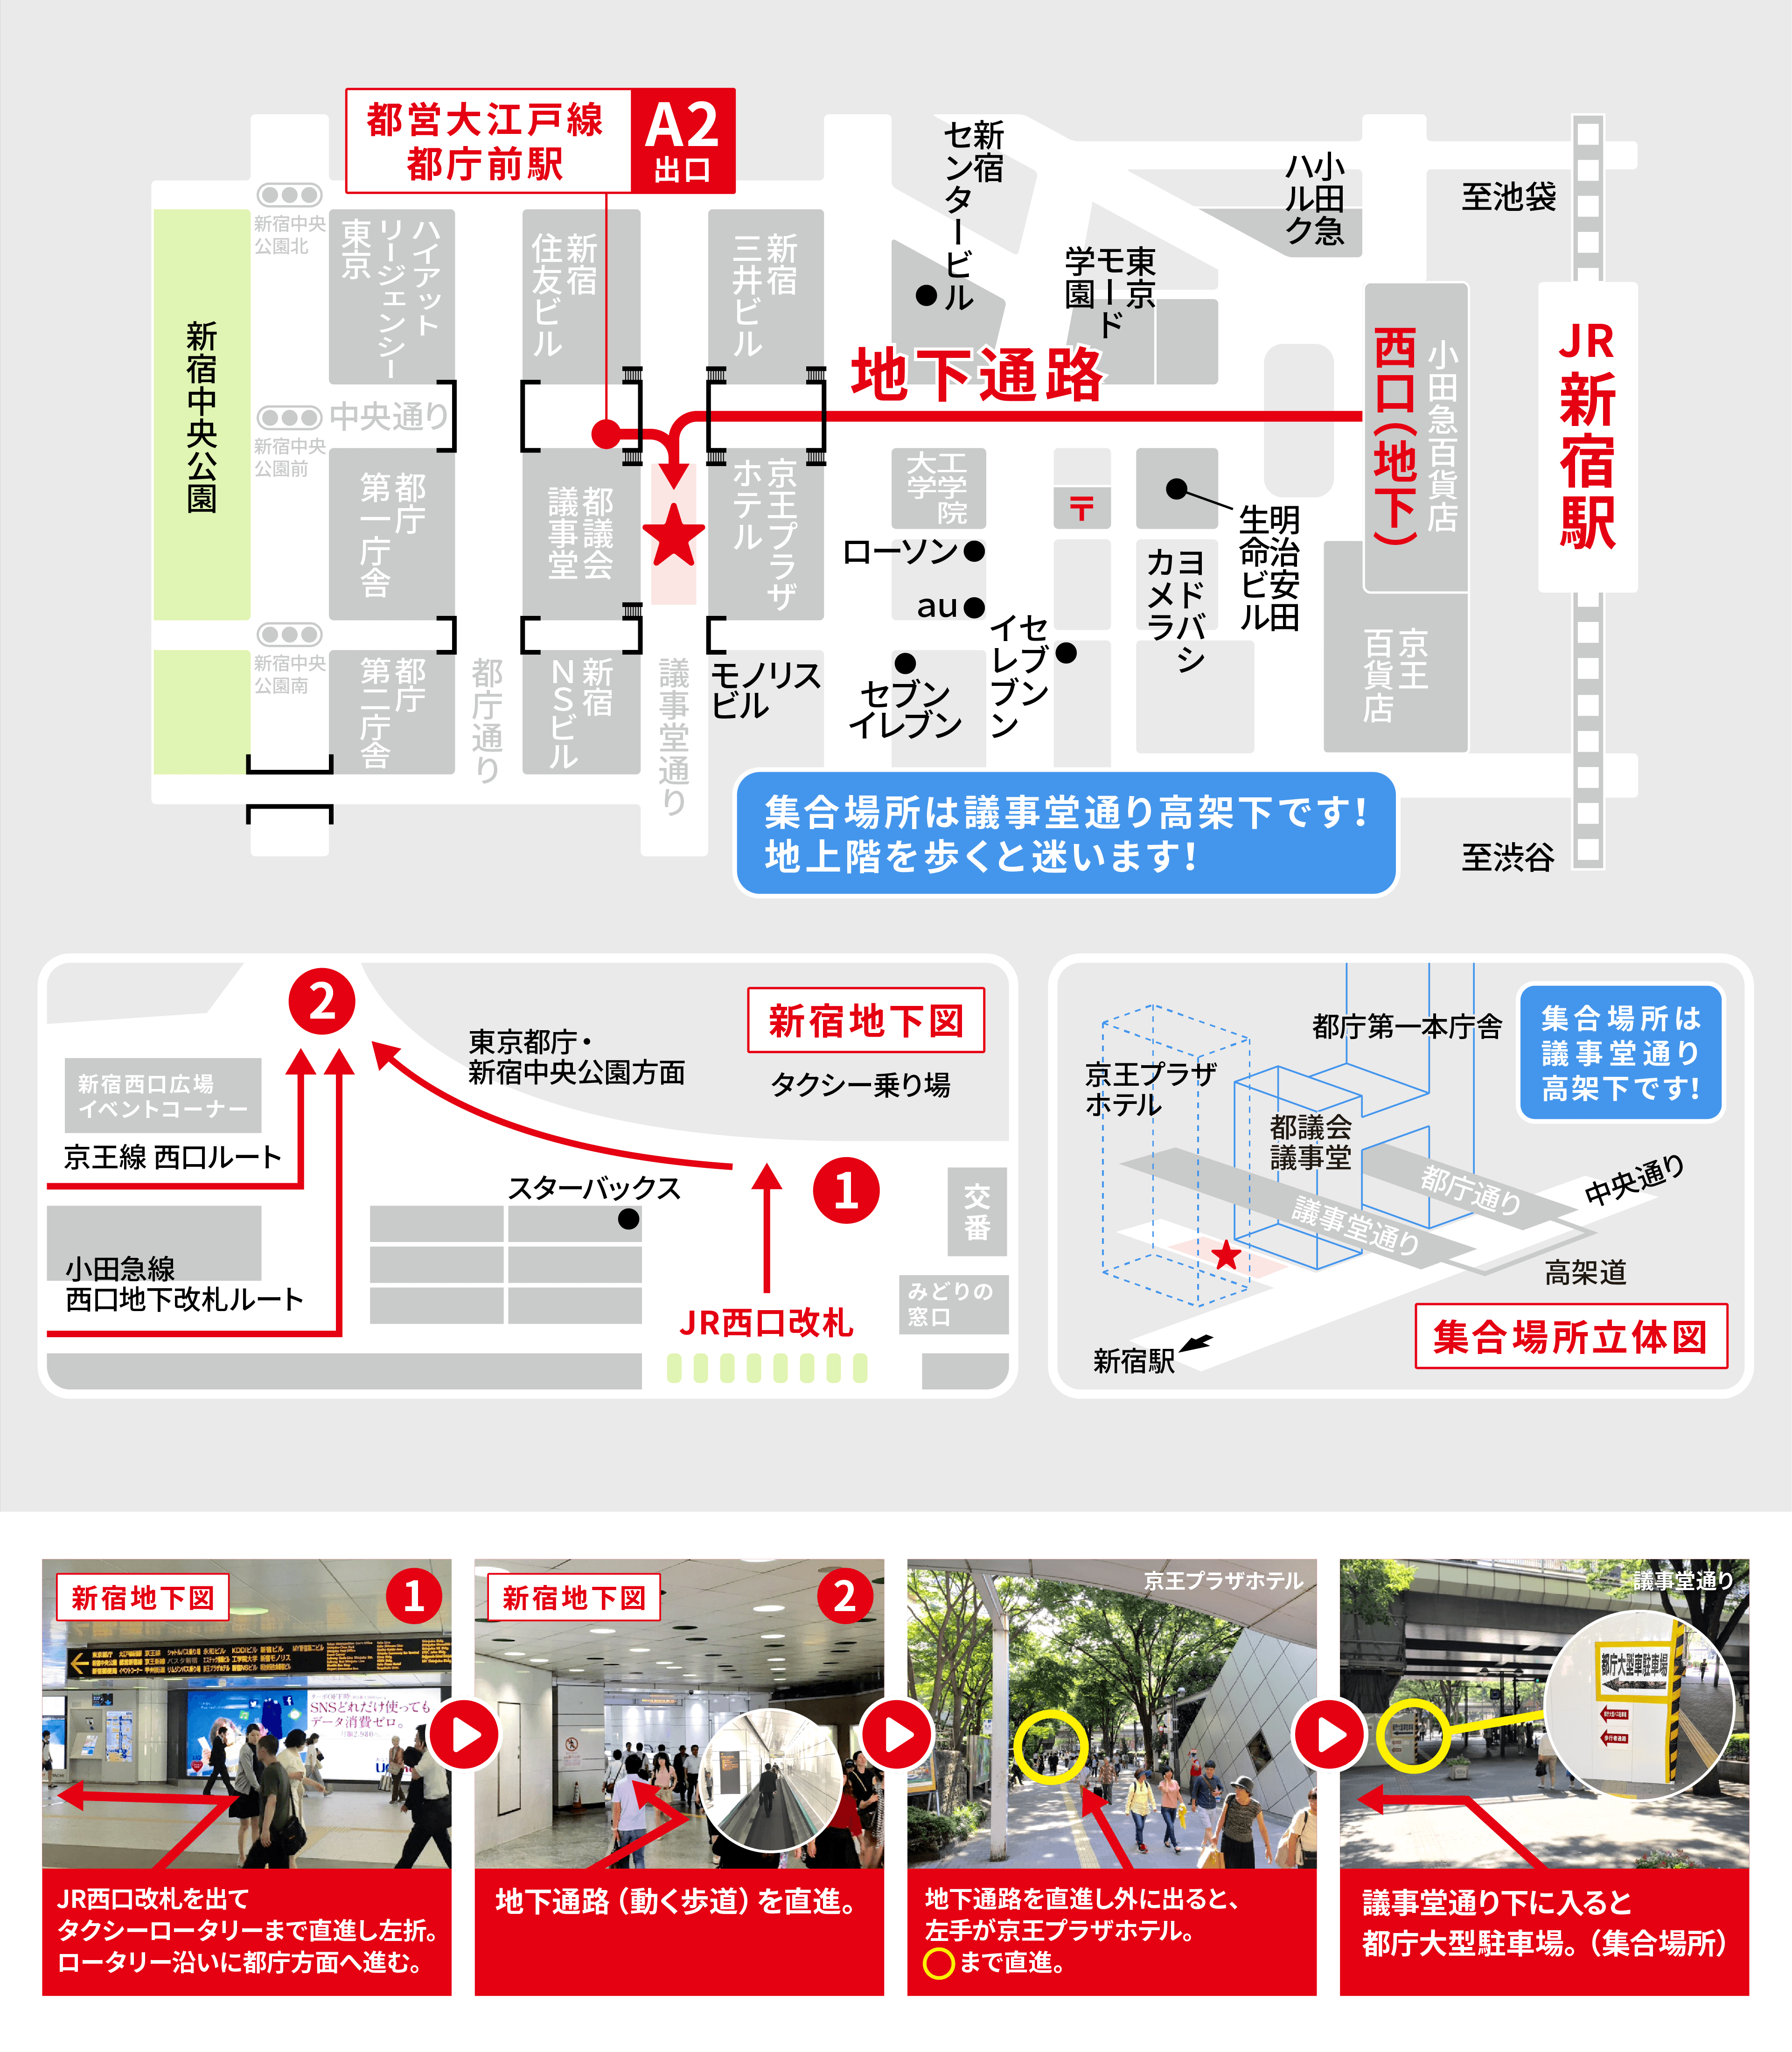 新宿乗り場の集合場所の地図